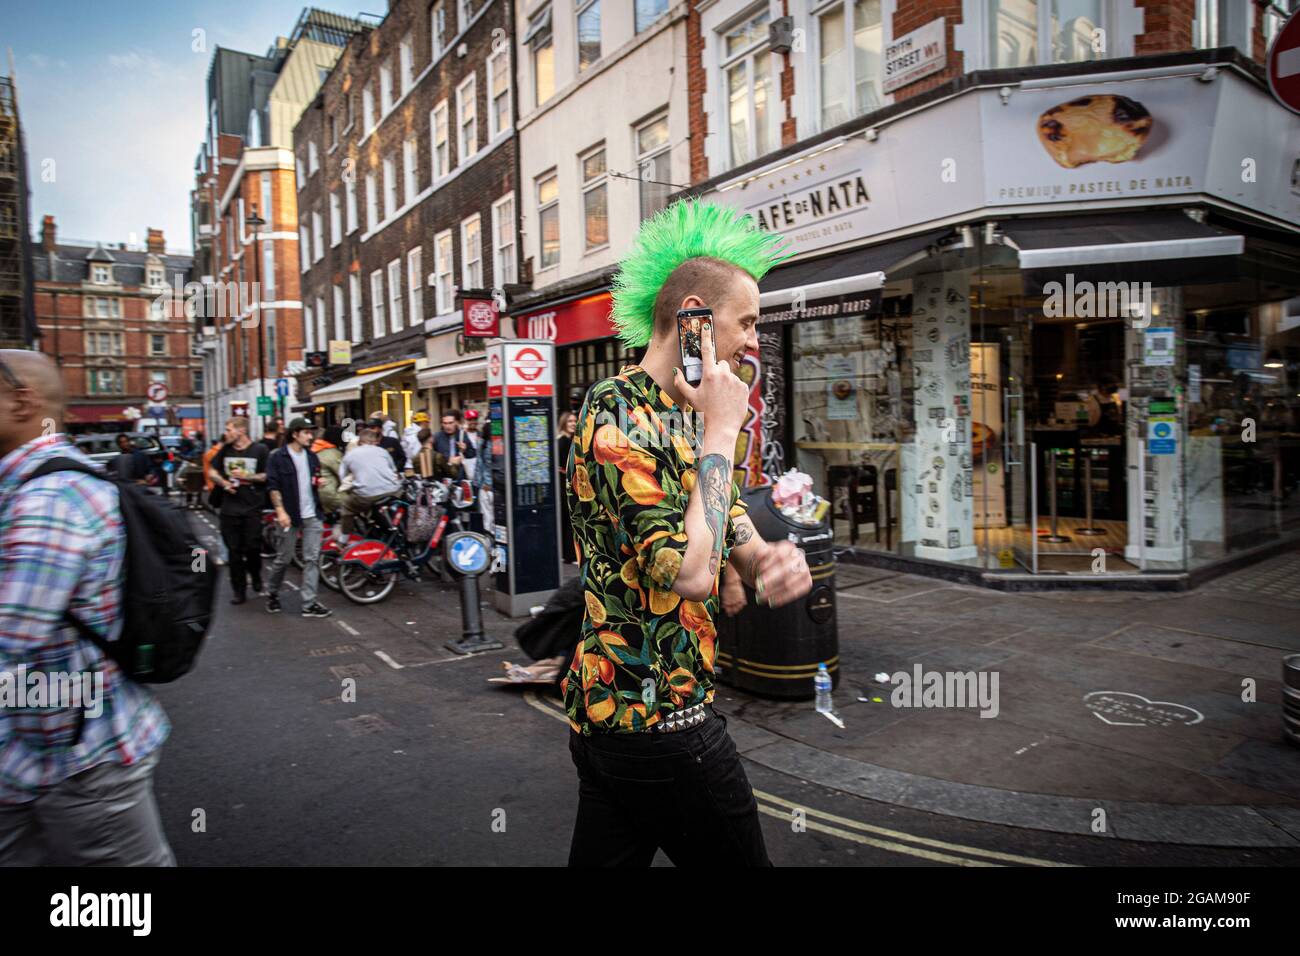 Punk avec mohawk vert marchant avec le téléphone mobil sur Old Compton Street dans Soho de Londres après avoir mis fin à toutes les restrictions liées au coronavirus Banque D'Images